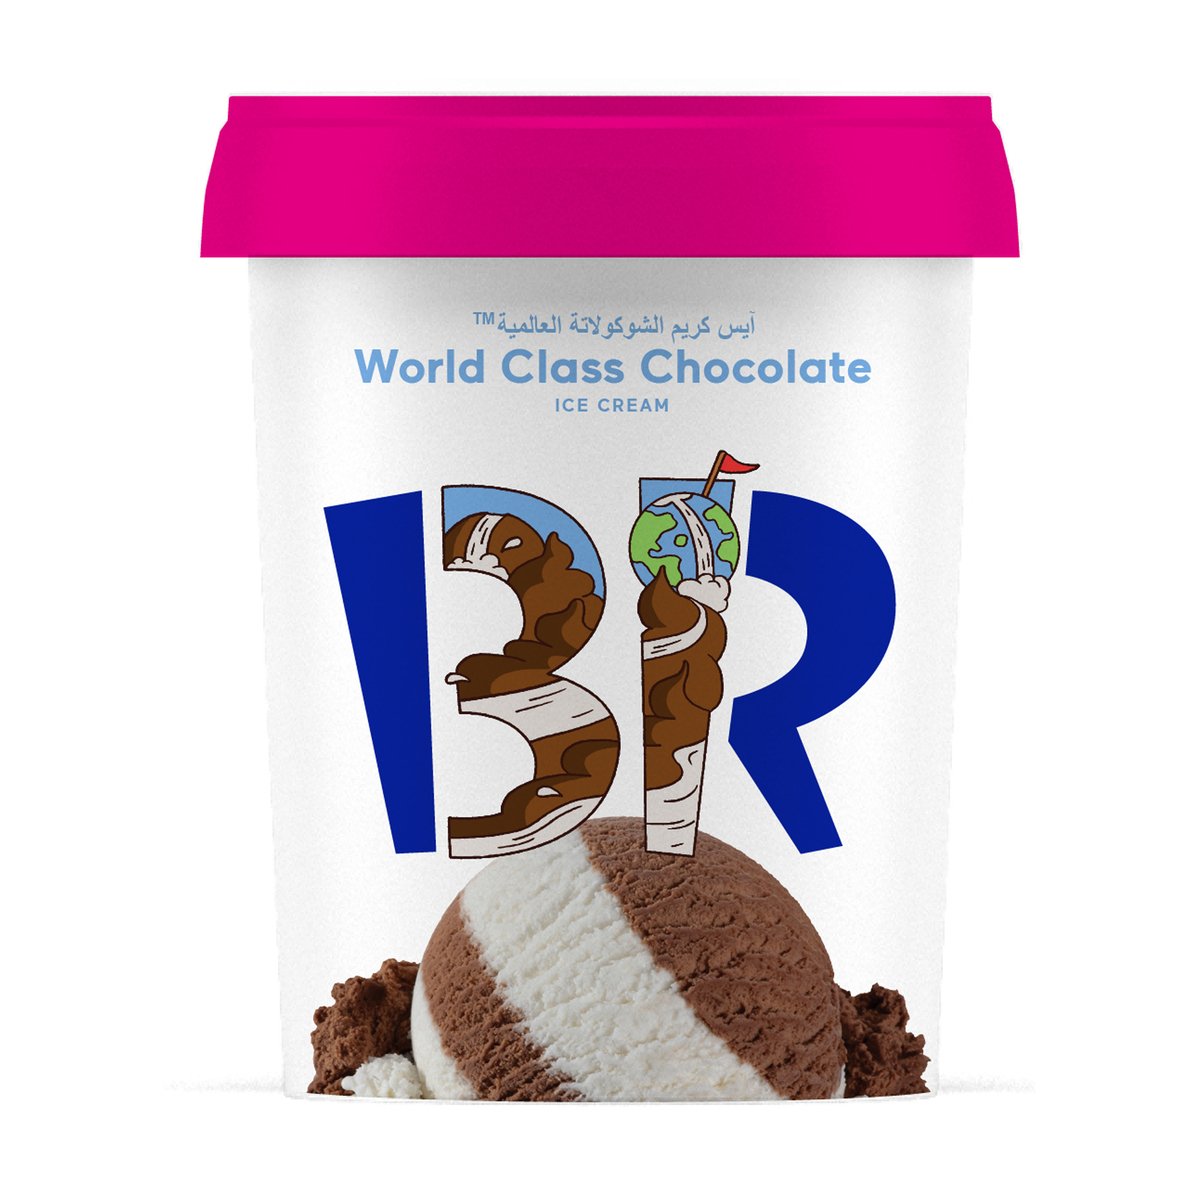 اشتري قم بشراء باسكن روبنز آيس كريم الشوكولاتة العالمية 1 لتر Online at Best Price من الموقع - من لولو هايبر ماركت Ice Cream Take Home في الكويت